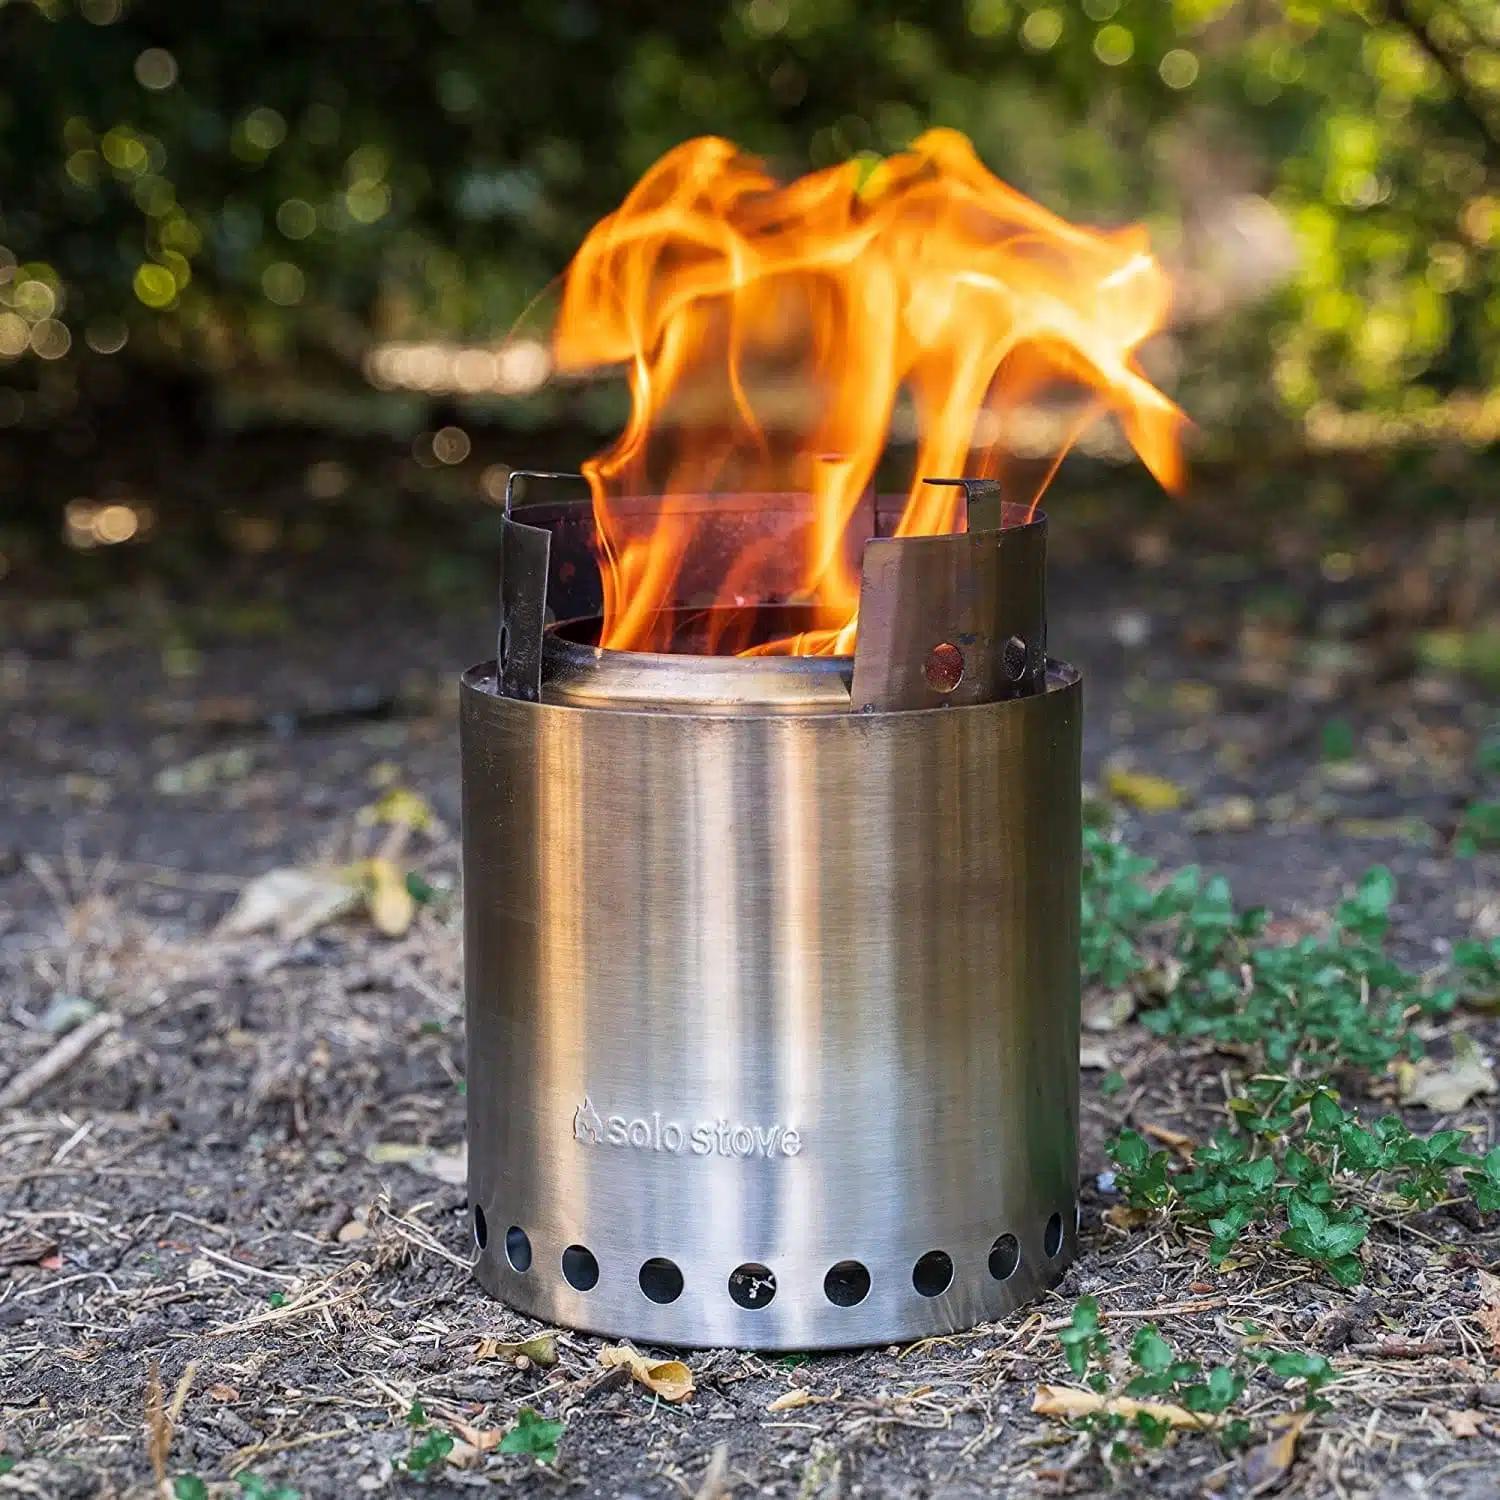 solo stove campfire in use